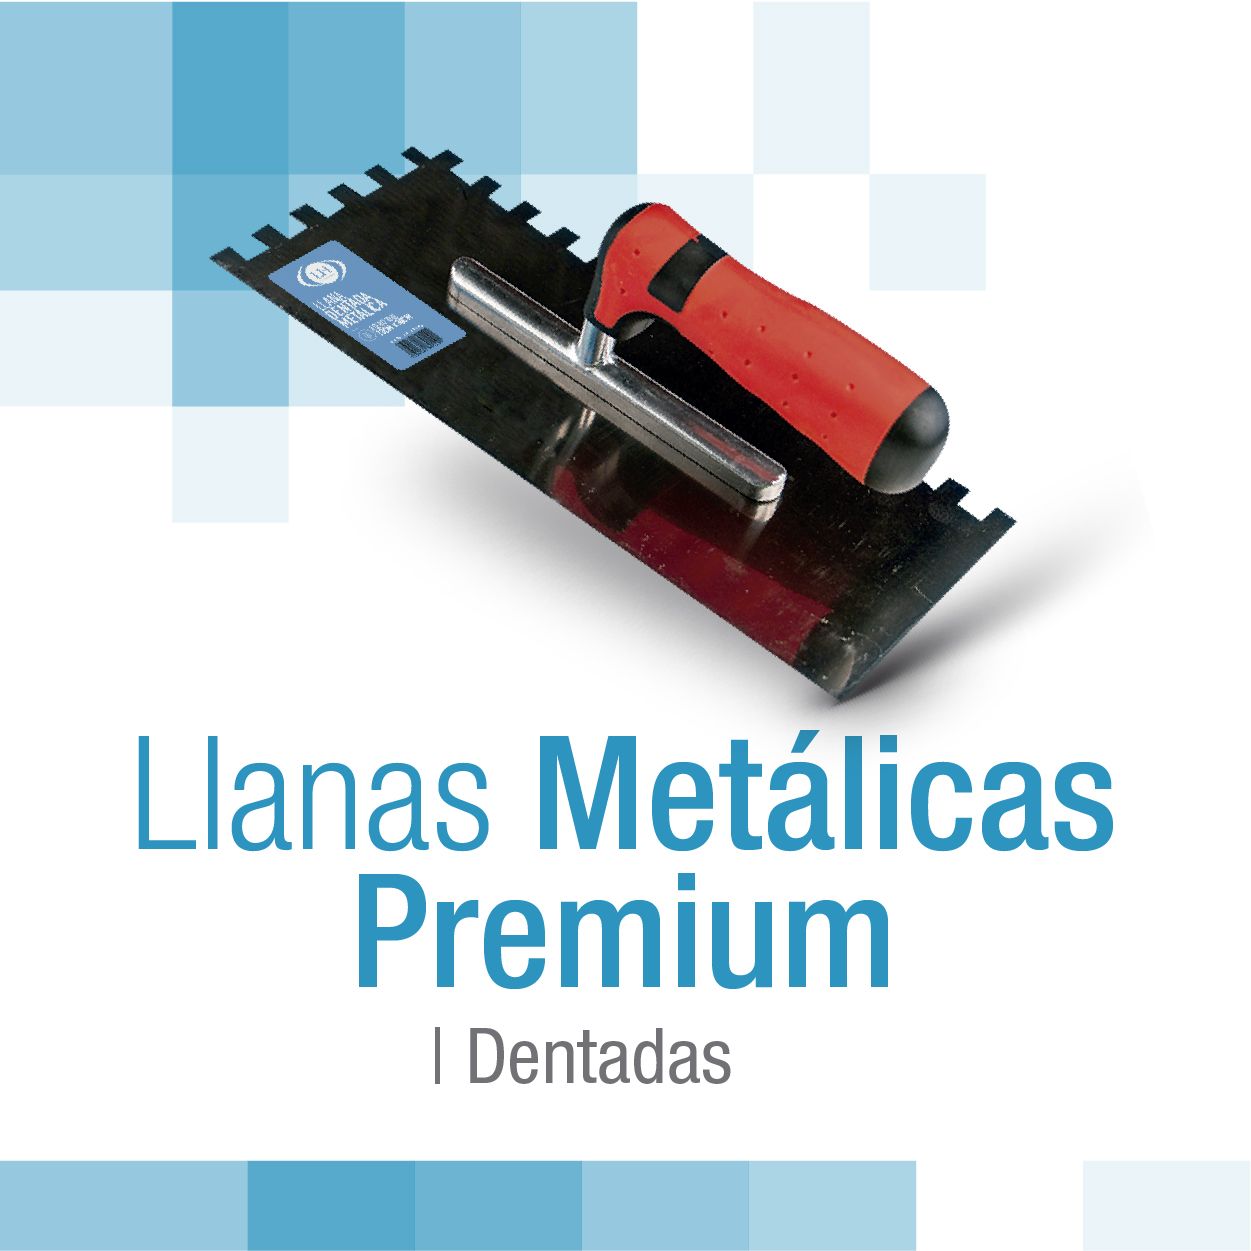 encabezado_llanas_metalicas_premium_dentadas